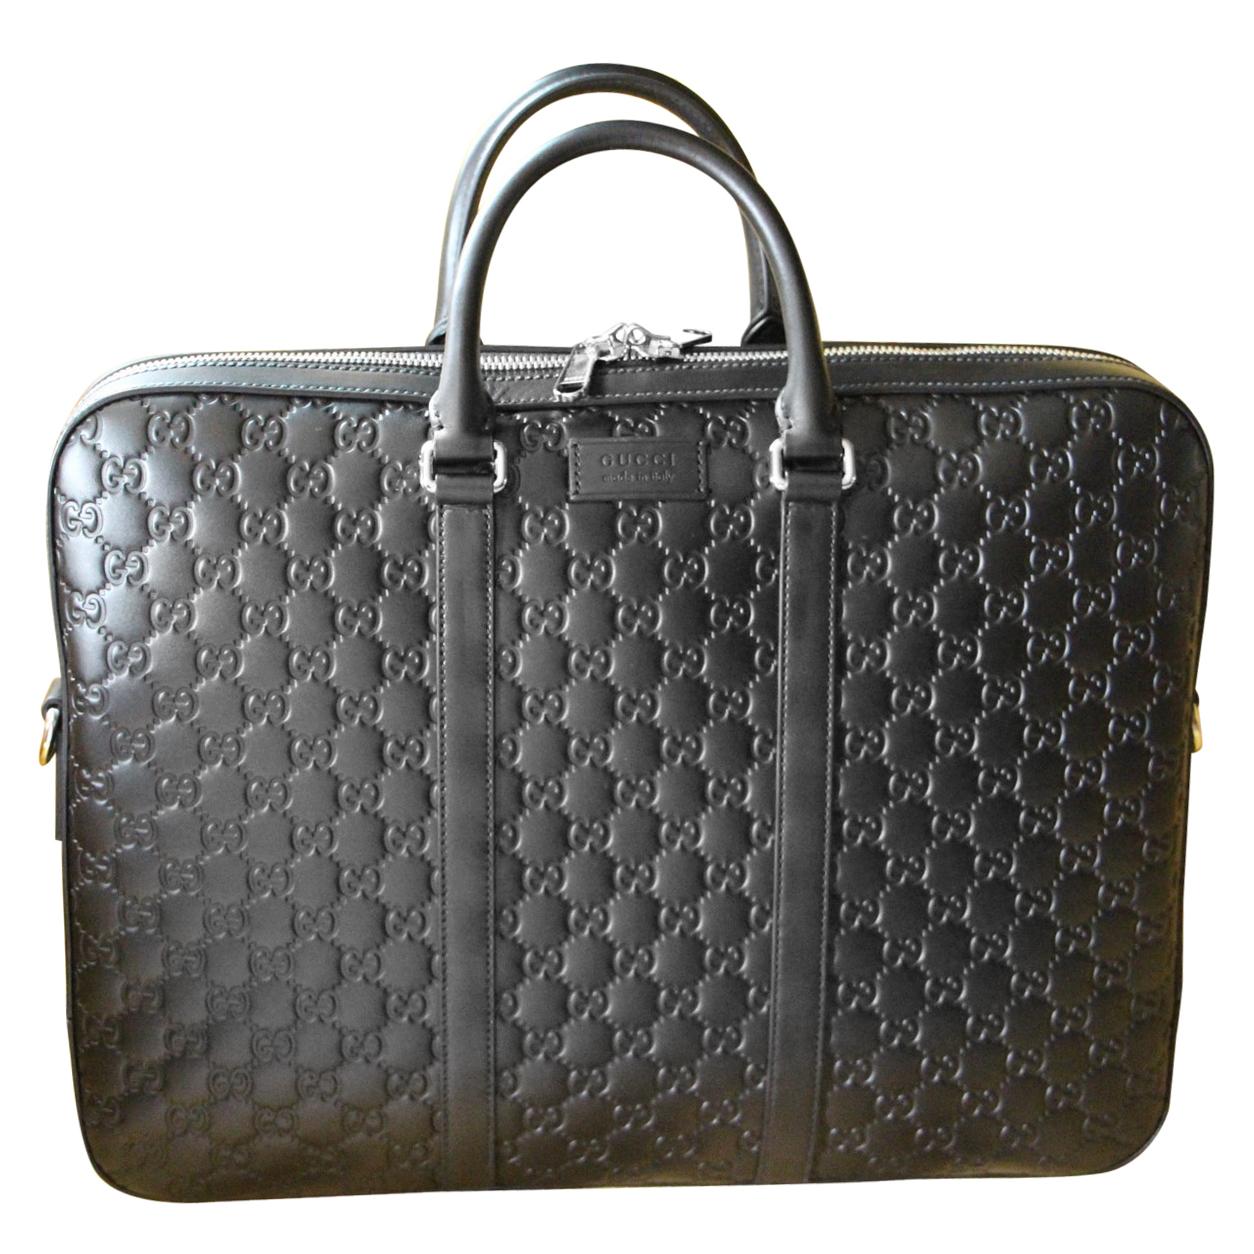 Gucci Black Leather Signature Bag , Gucci Signature Briefcase